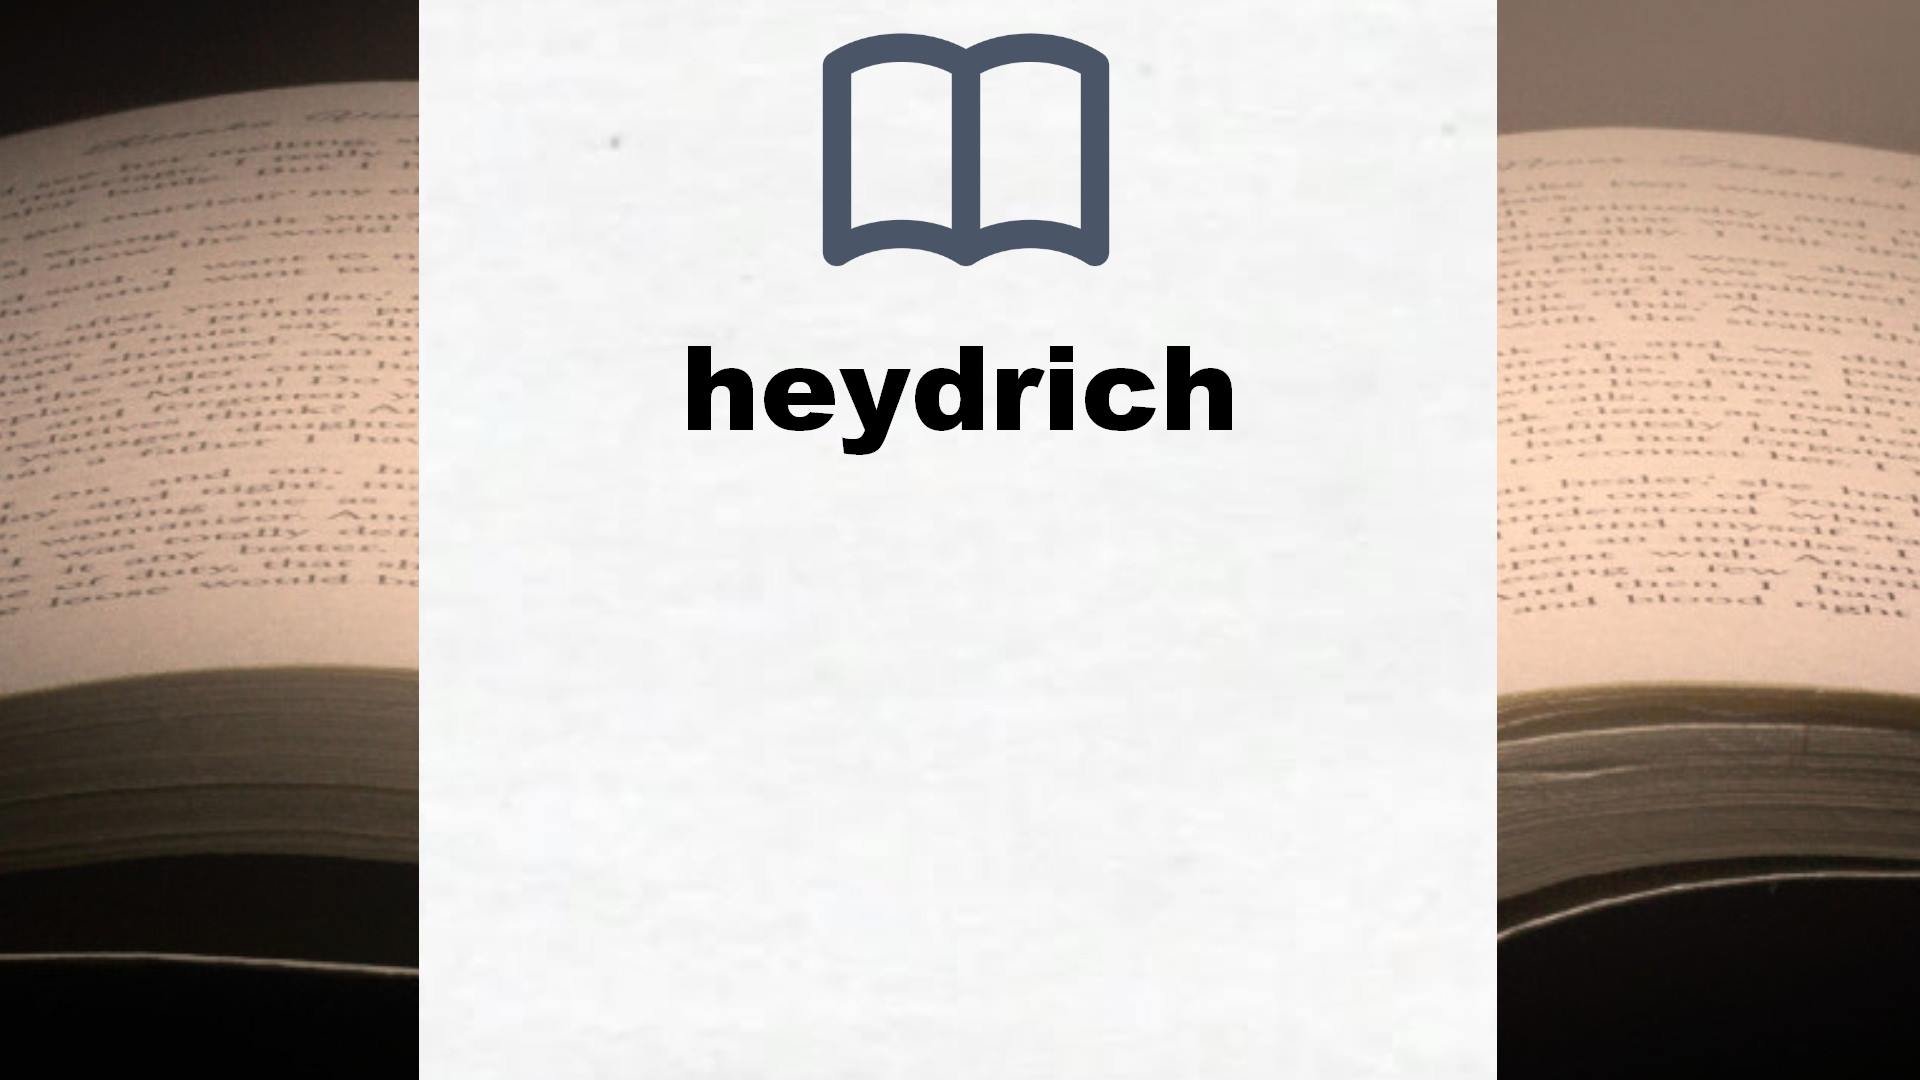 Libros sobre heydrich